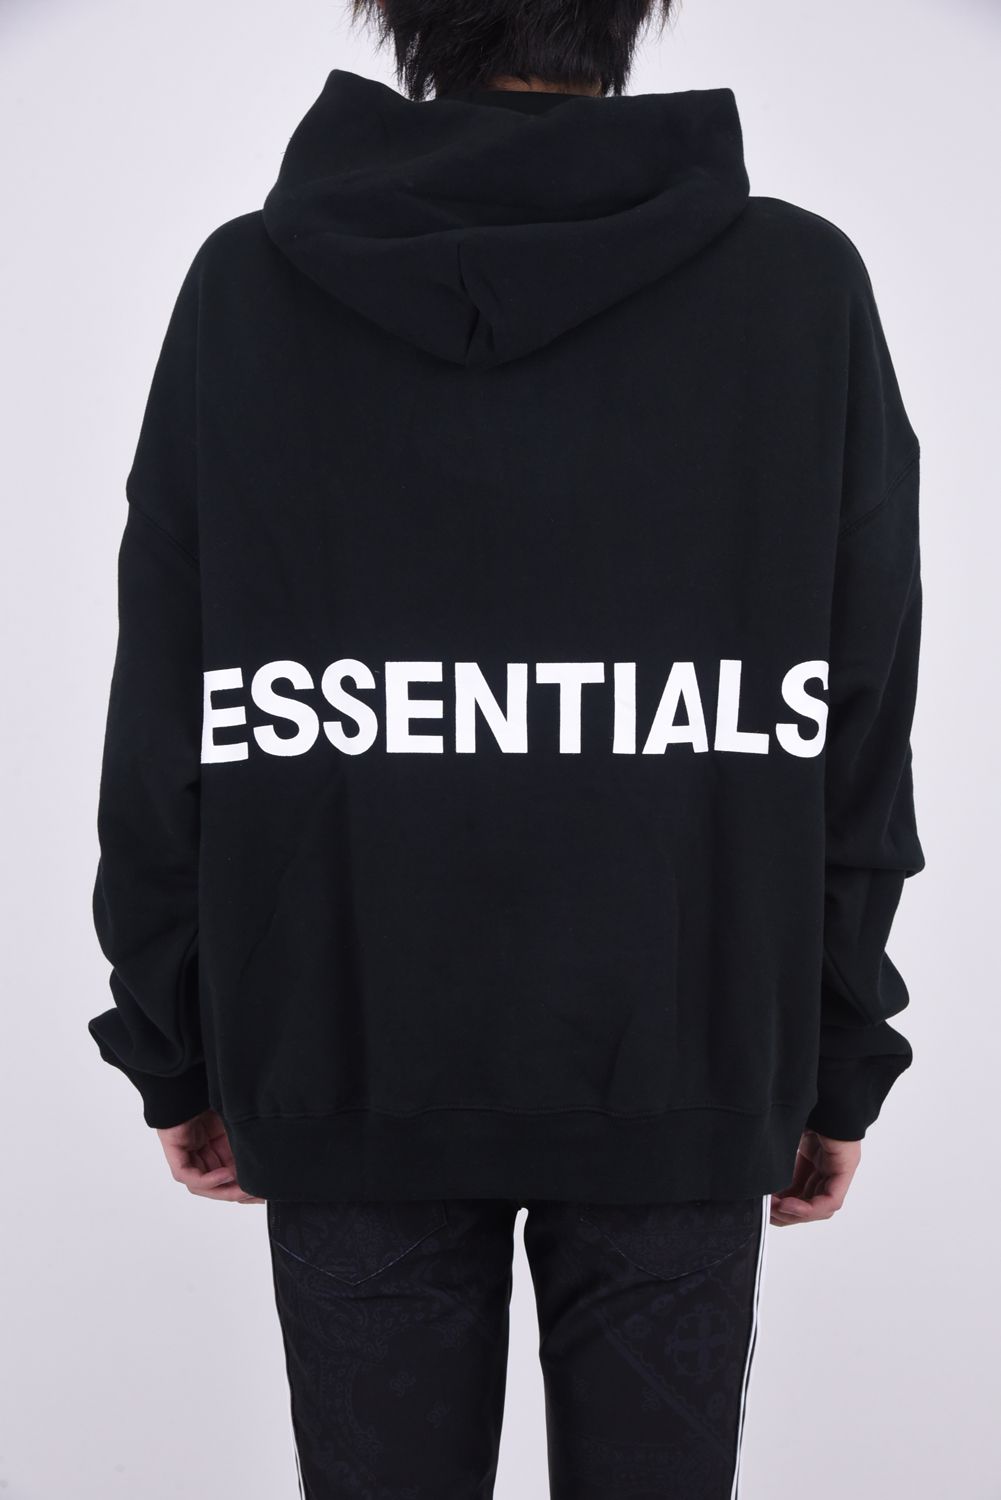 FOG Essentials LA Boxy Pullover黒